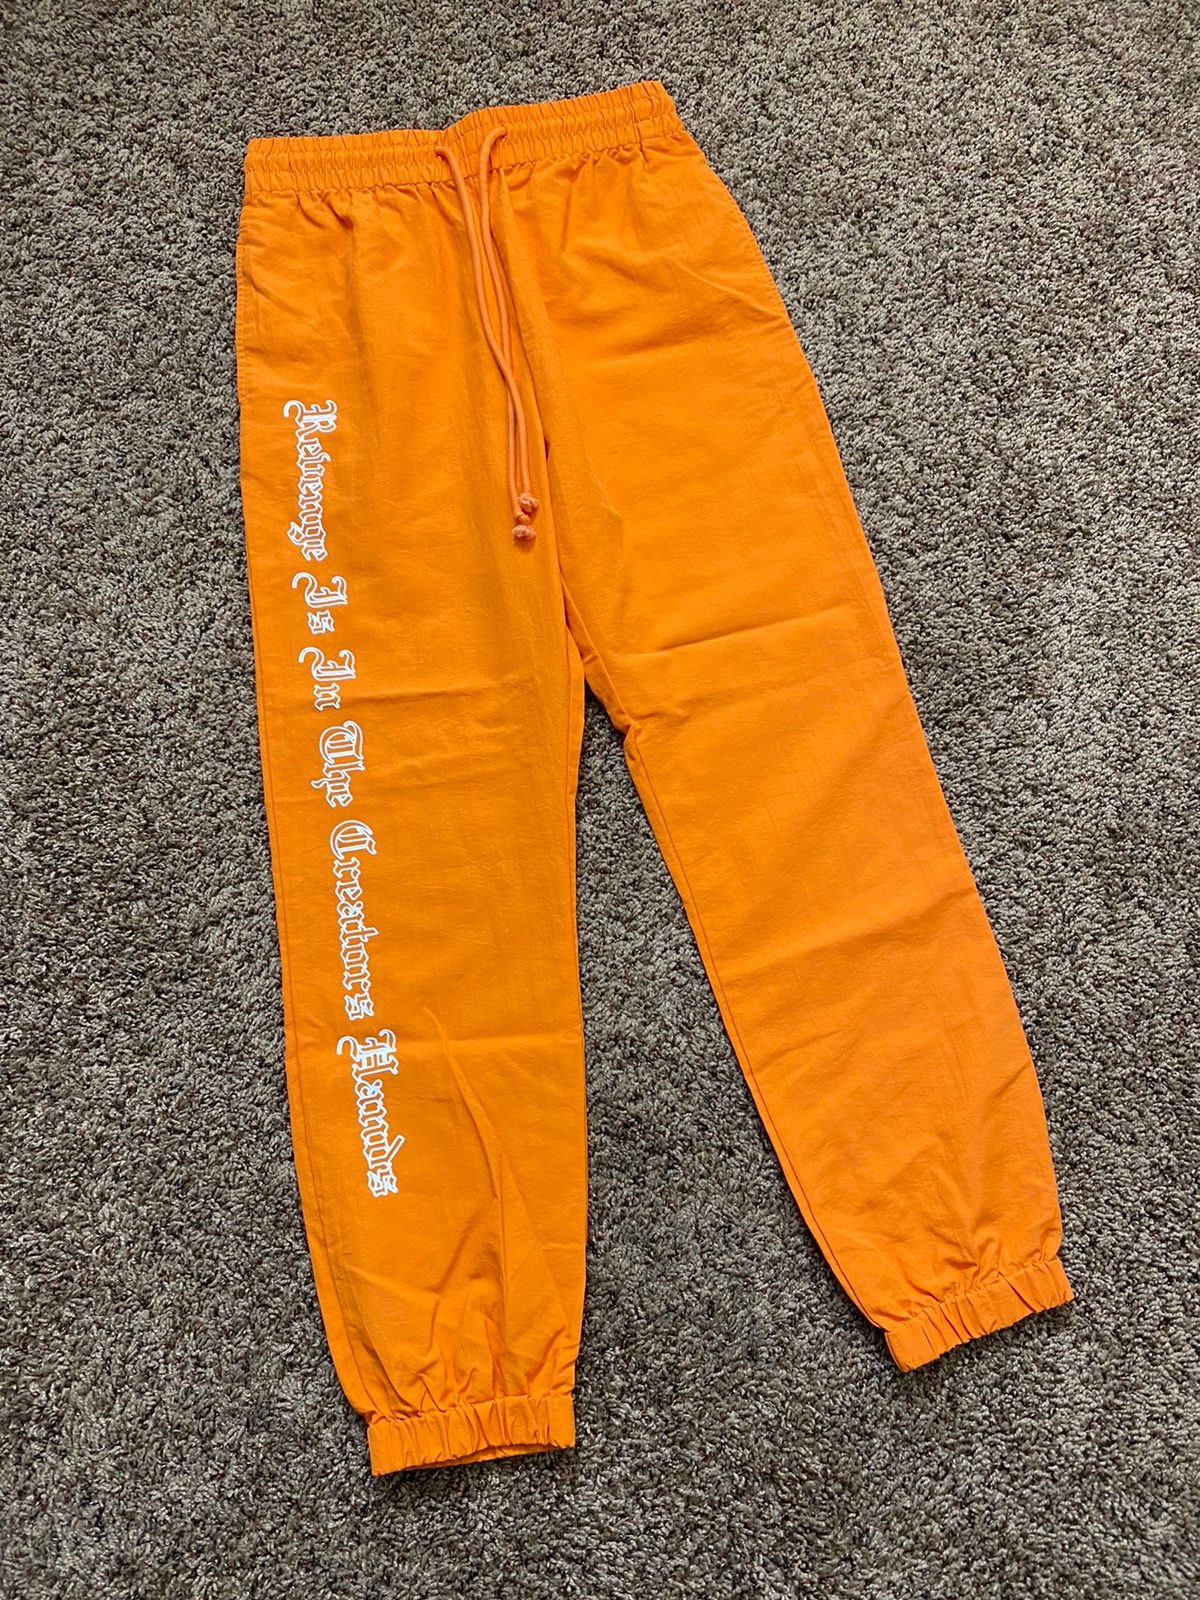 Pre-owned Hype X Revenge Samplerevenge Orange Trademark Track Pants Size Small